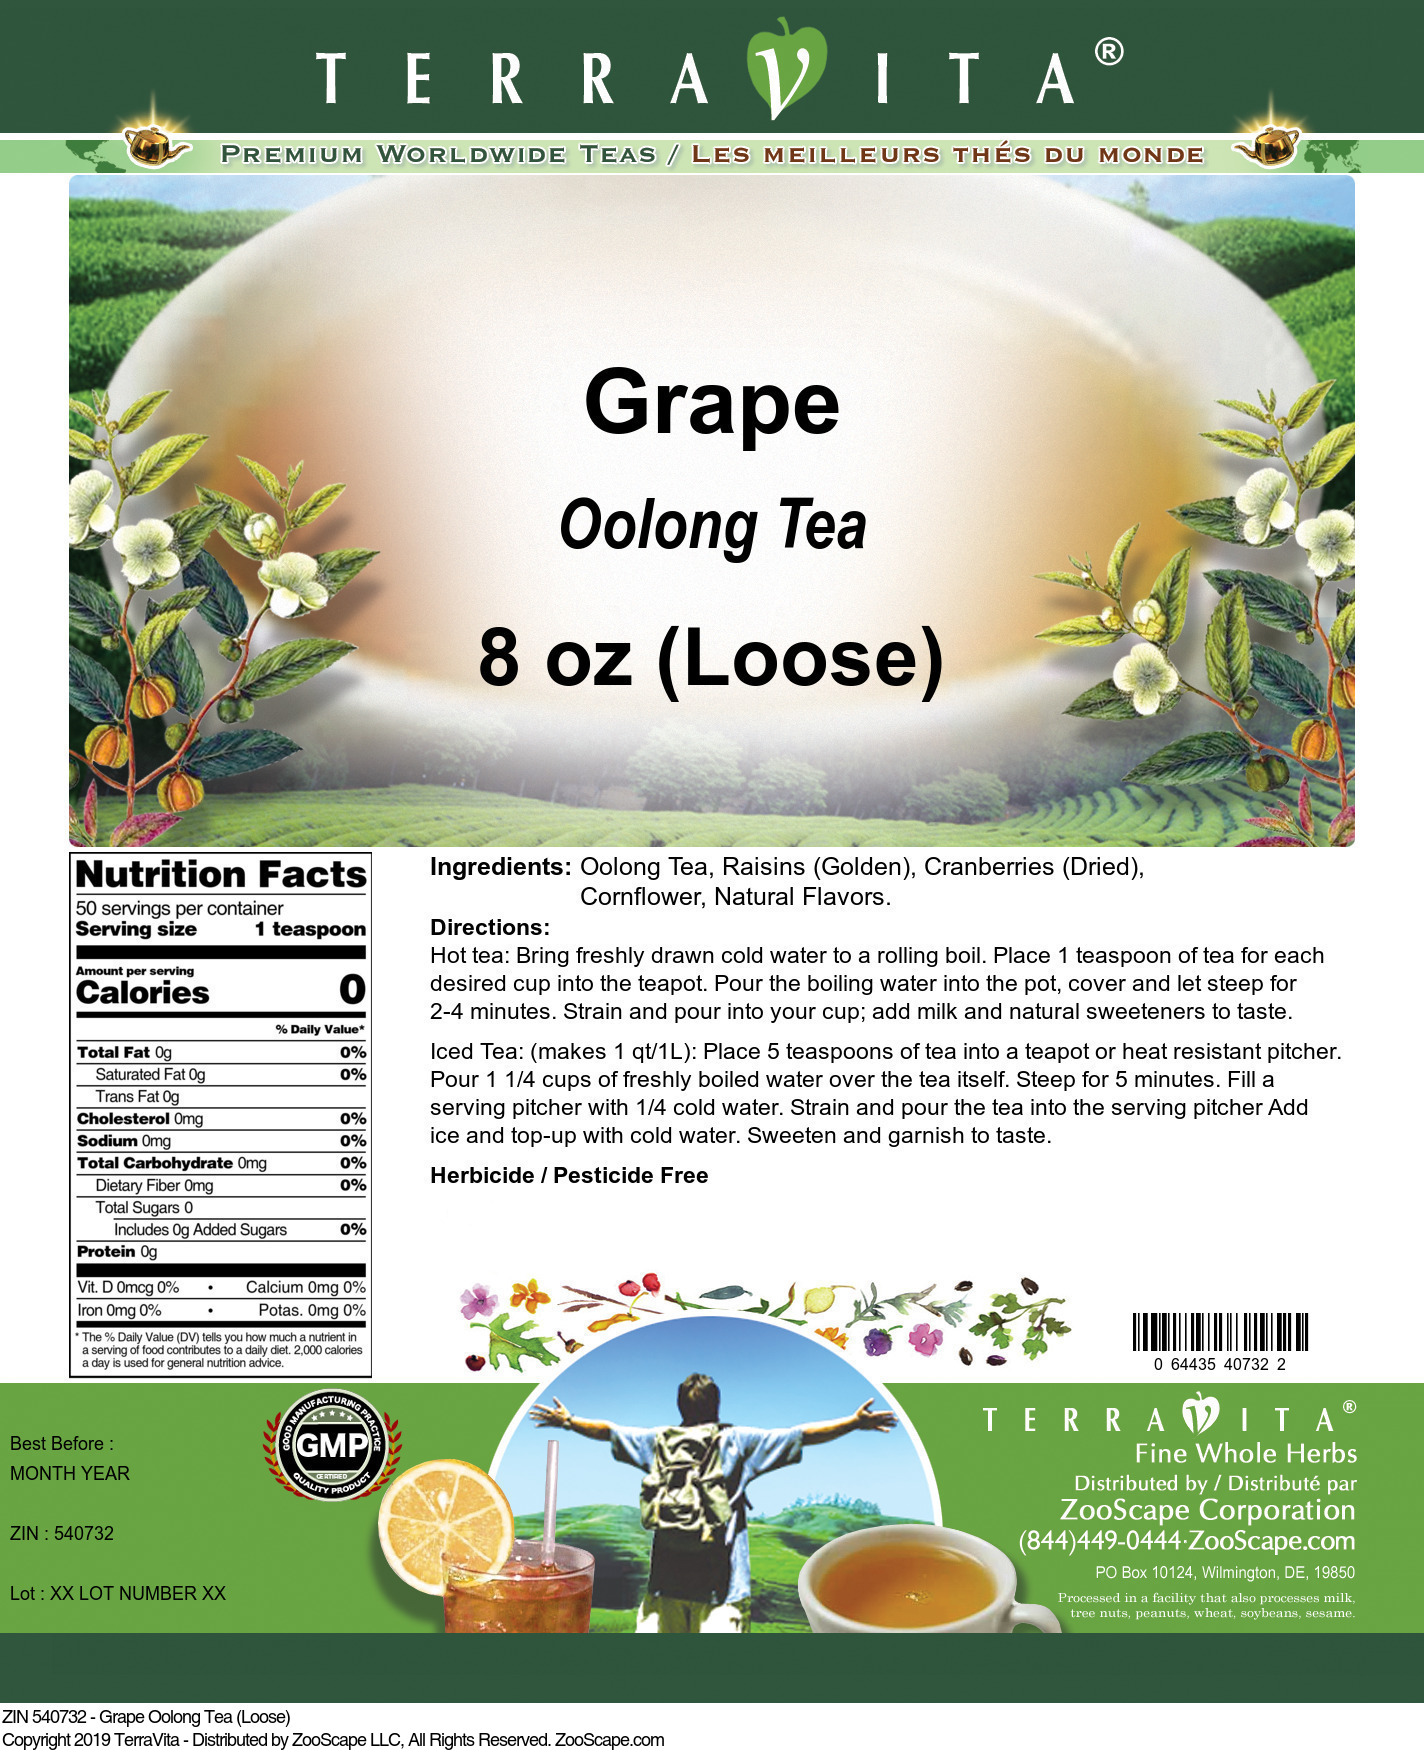 Grape Oolong Tea (Loose) - Label